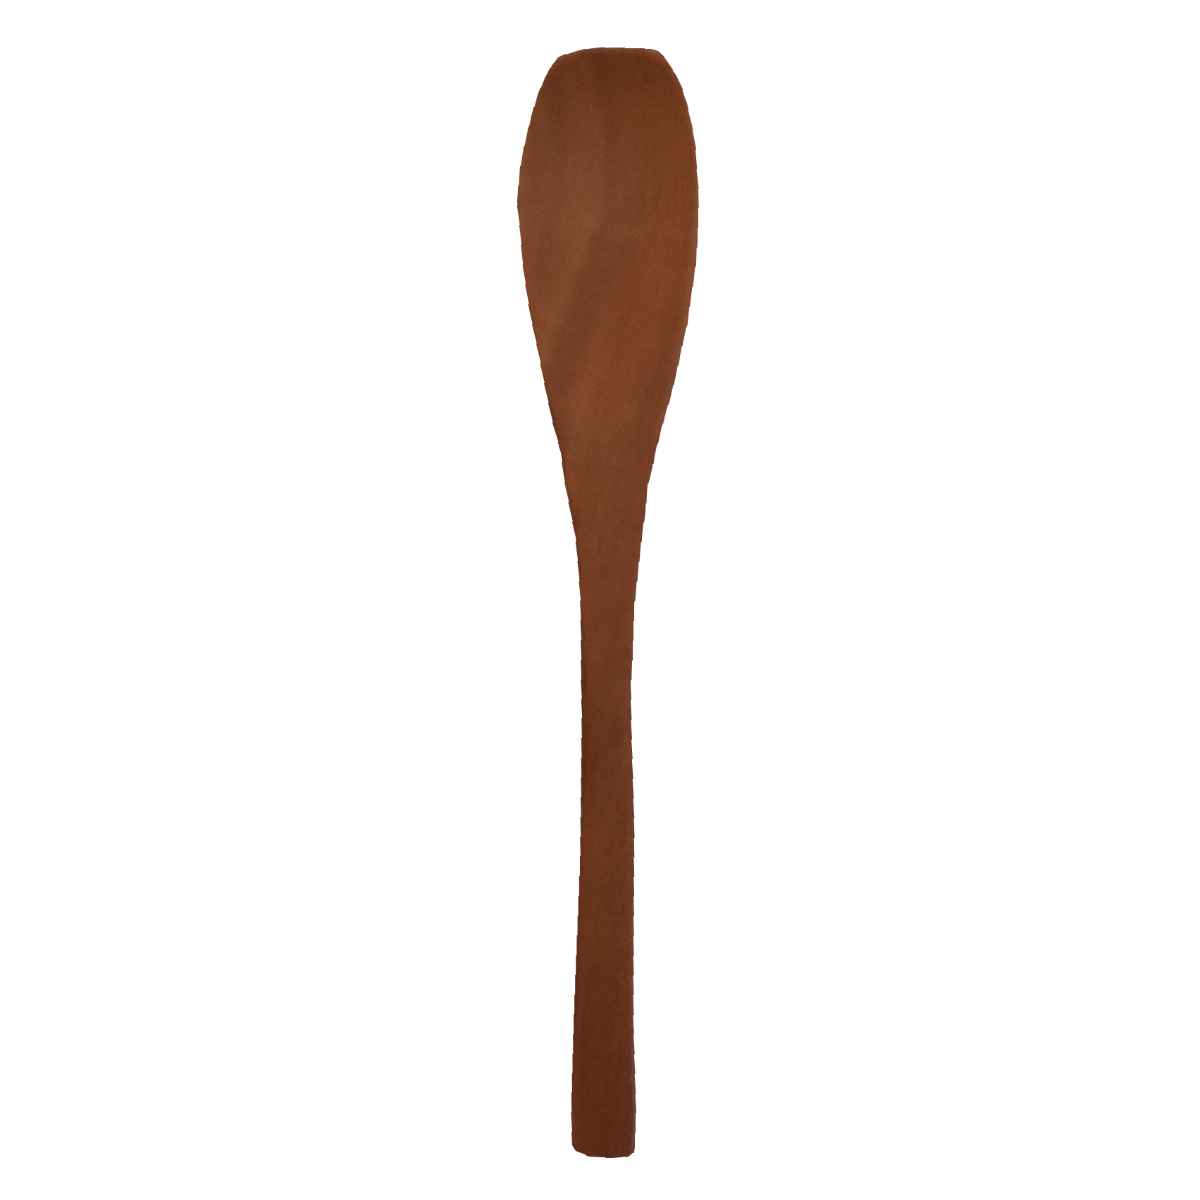 スプーン 13cm Obi アイスクリームスプーン 木製 （ カトラリー デザートスプーン 木製スプーン 木製カトラリー ）